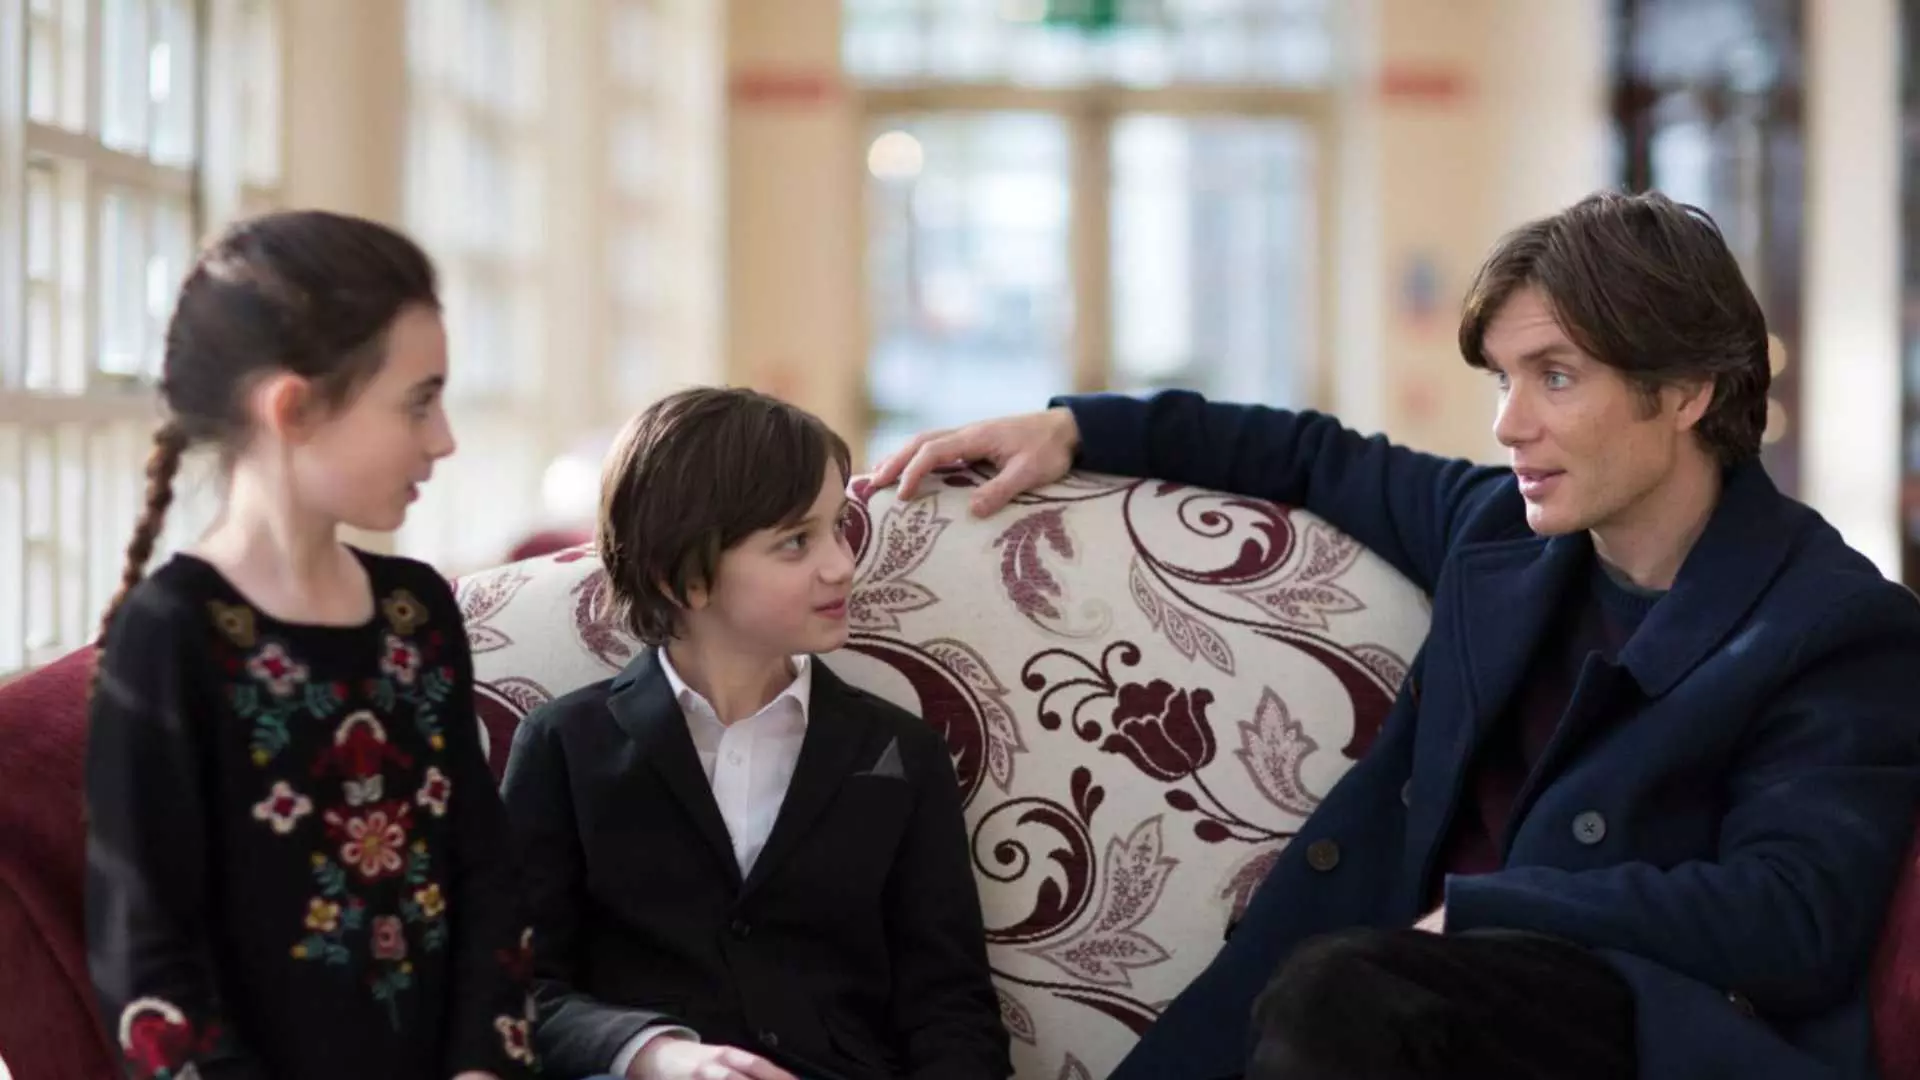 کلین مورفی در حال صحبت با دو فرزند خود در فیلم The Delinquent Season